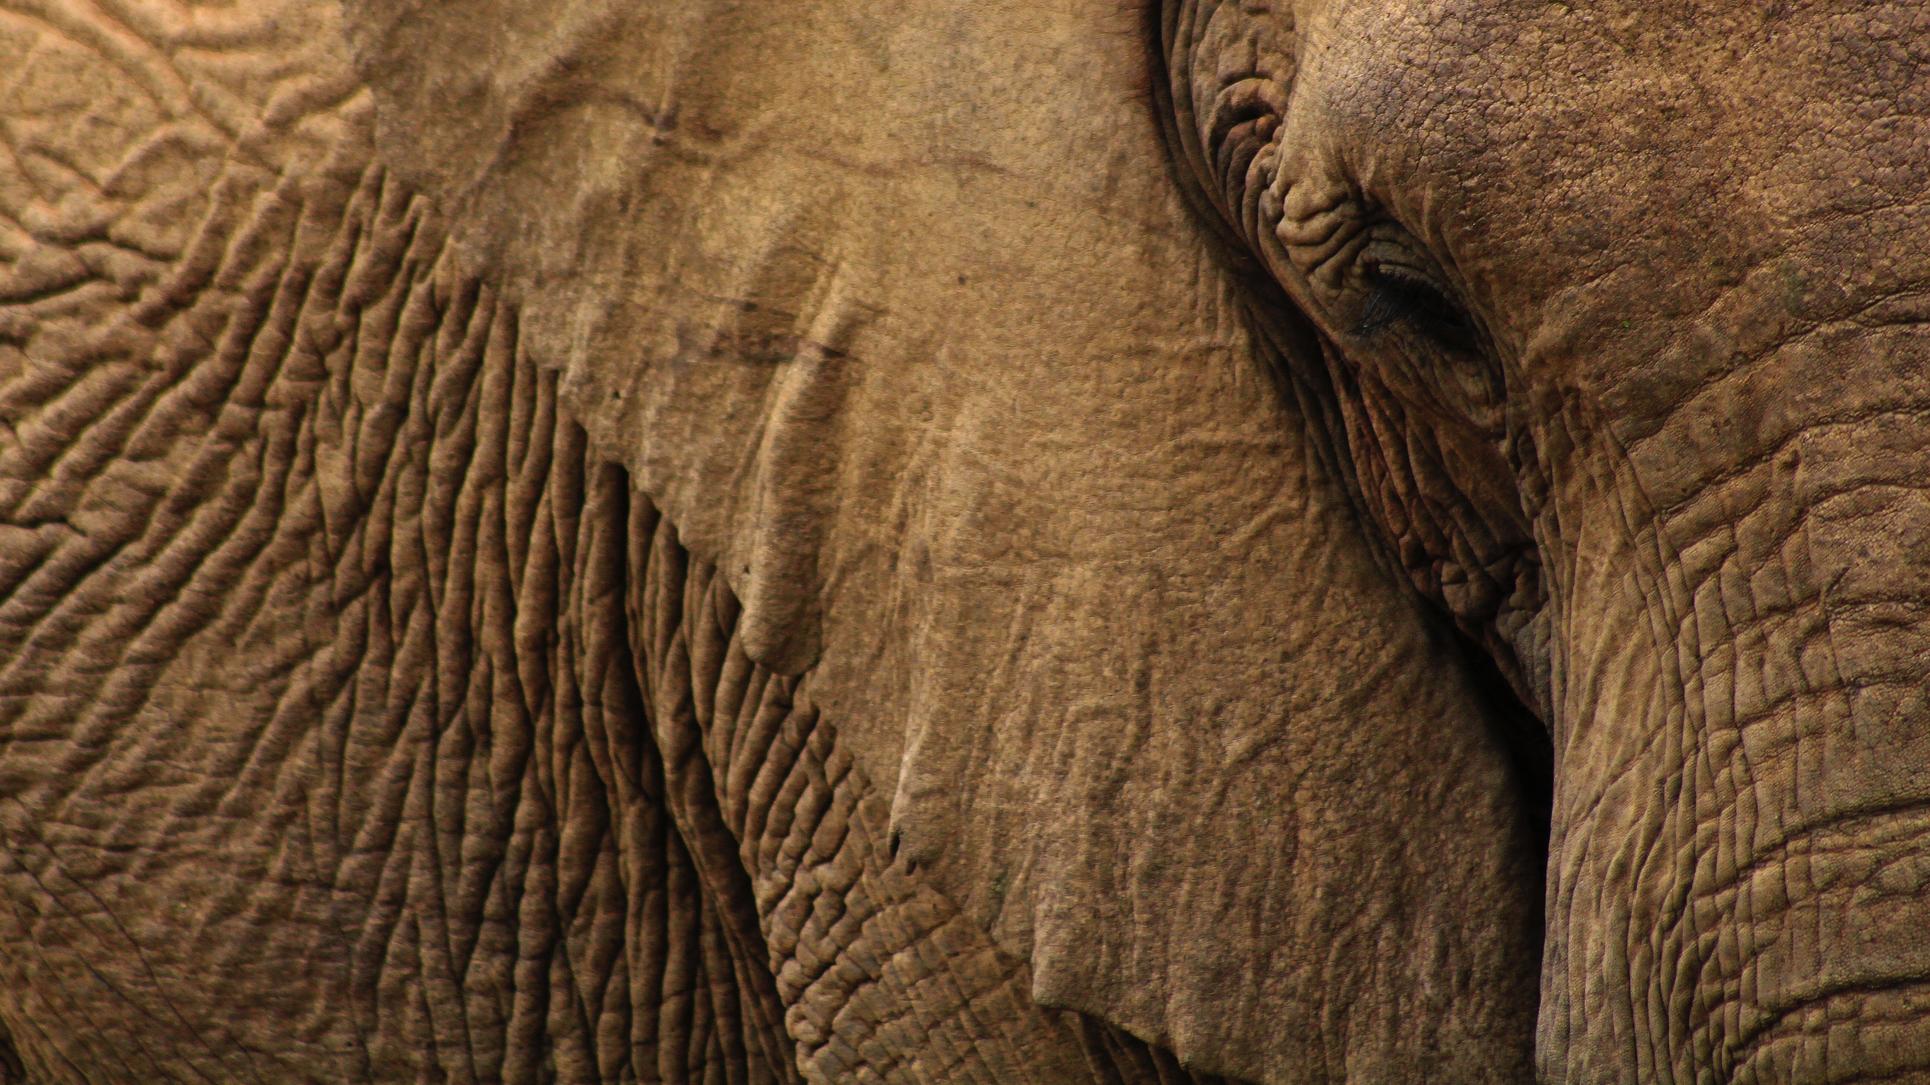 viajes lujo personalizados Elefant Travel elefante Namibia África